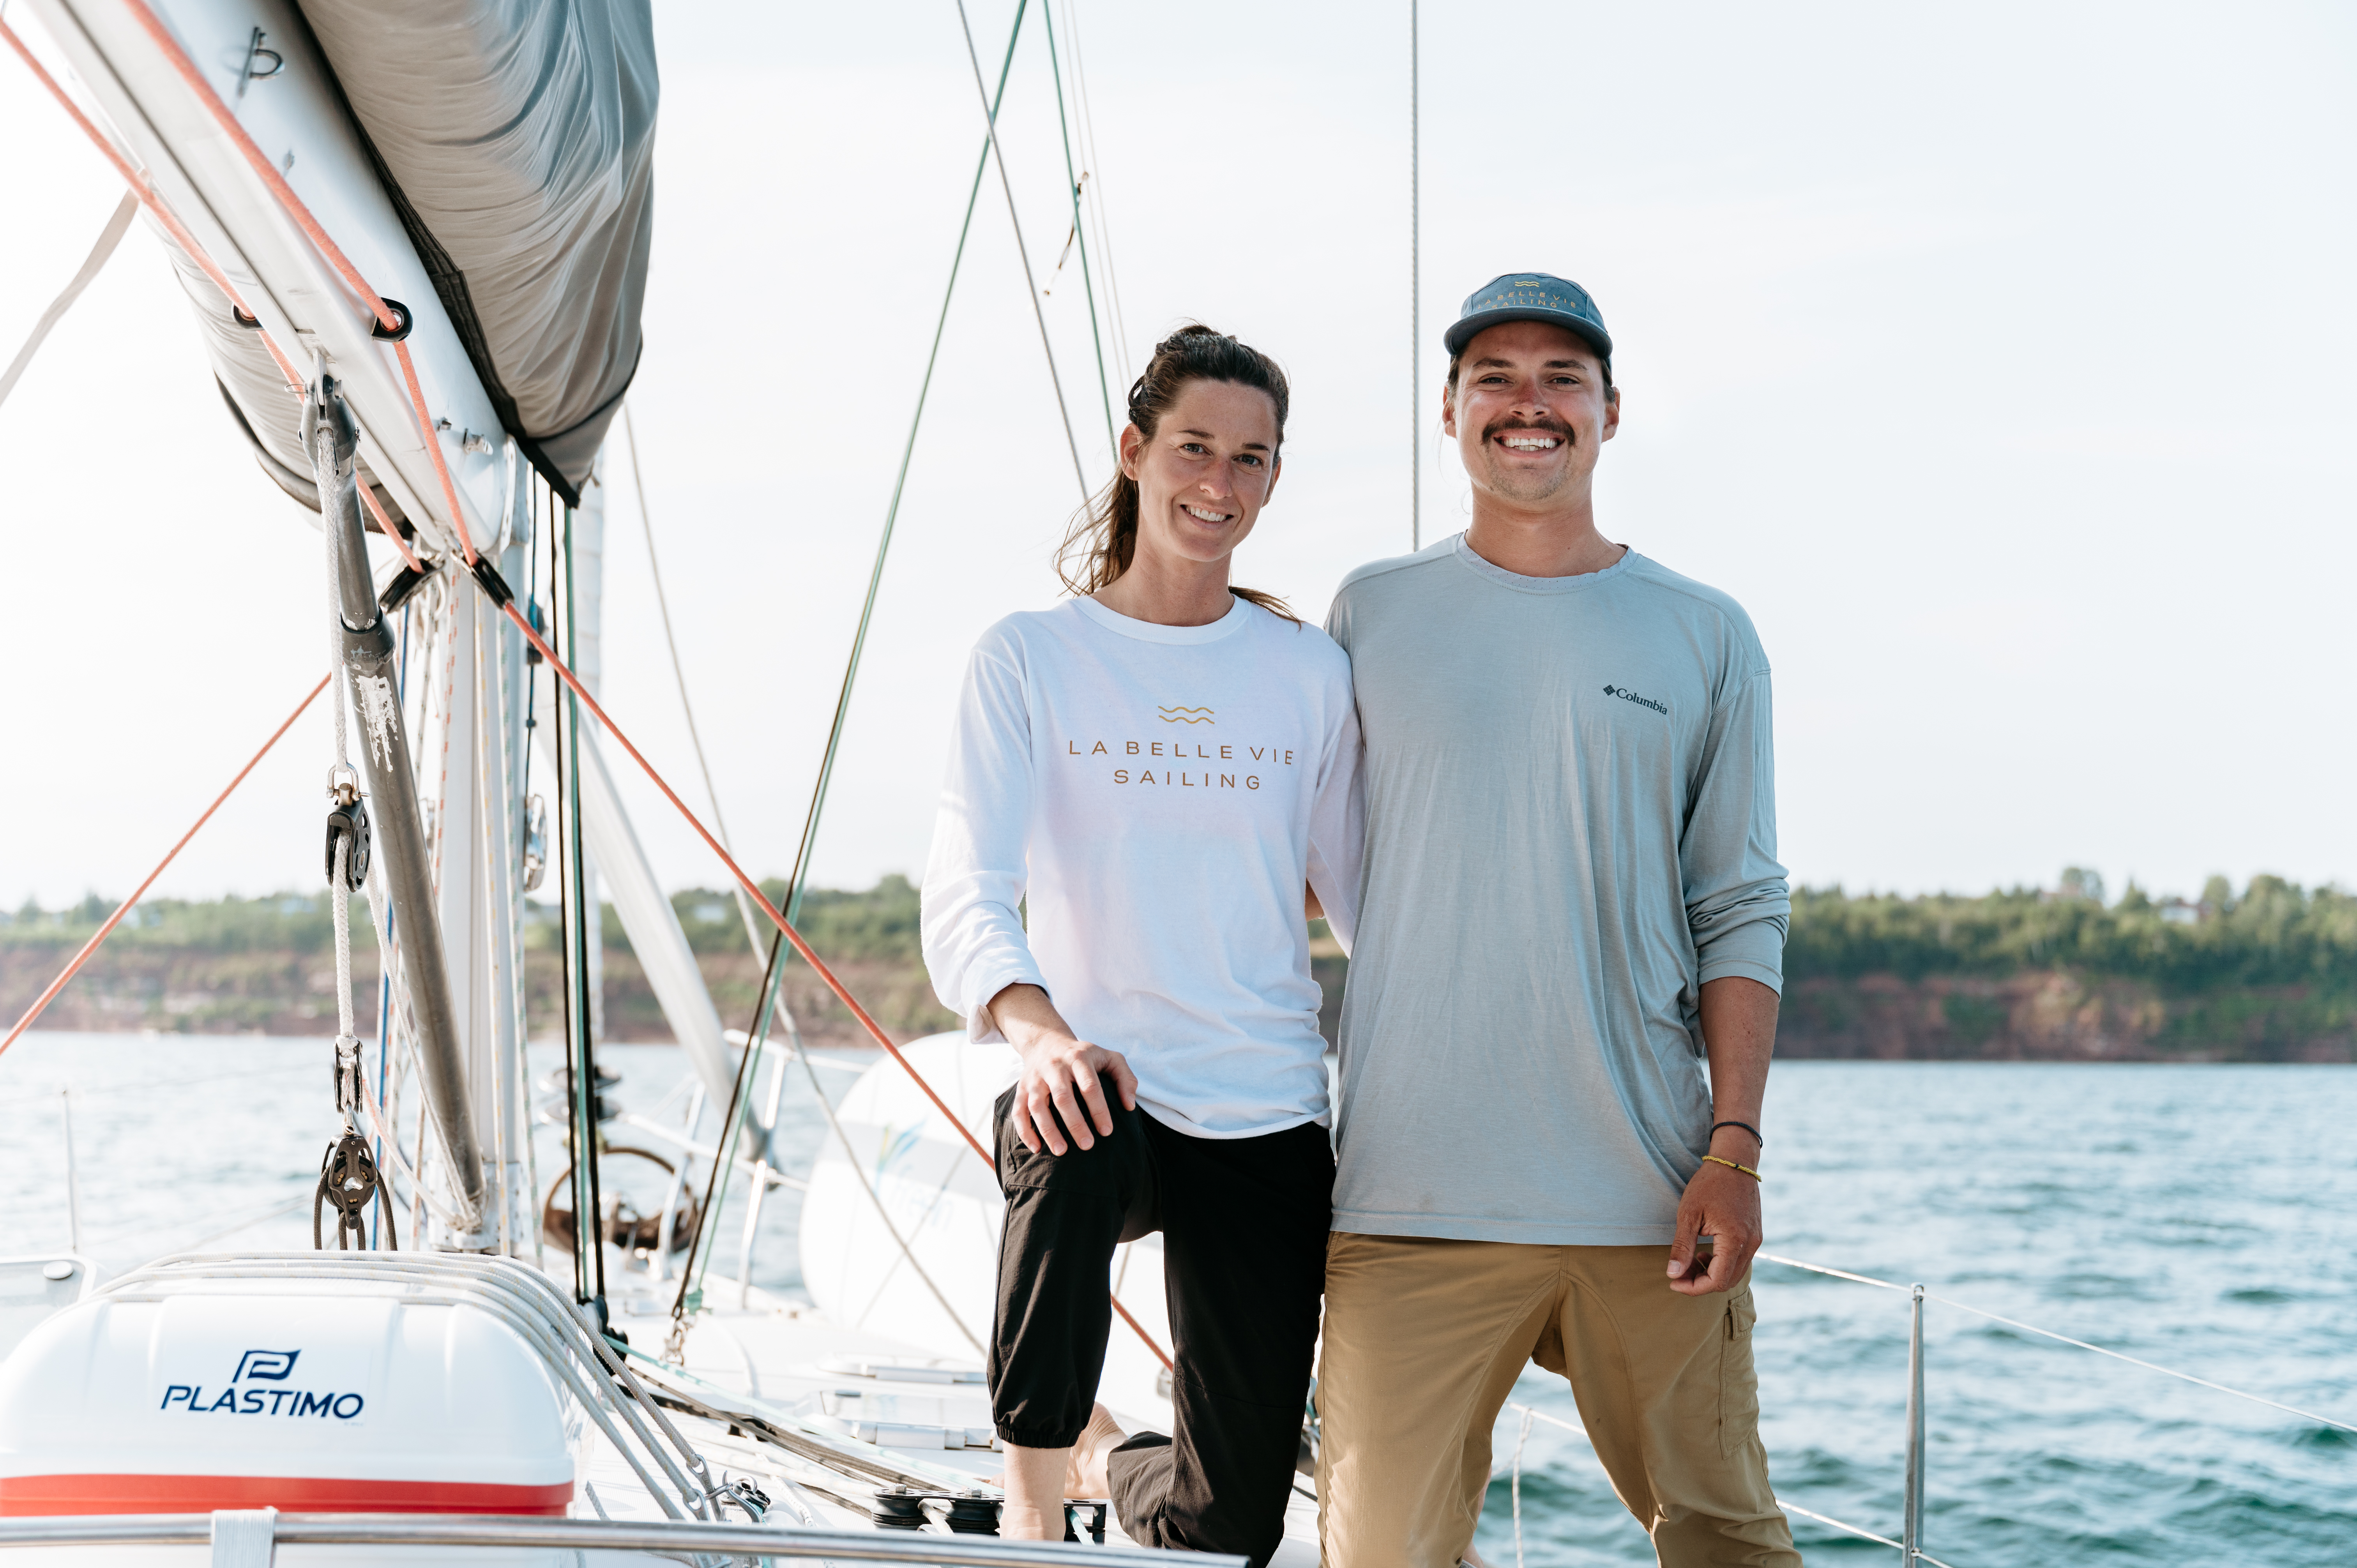 La belle vie sailing – Business Portrait